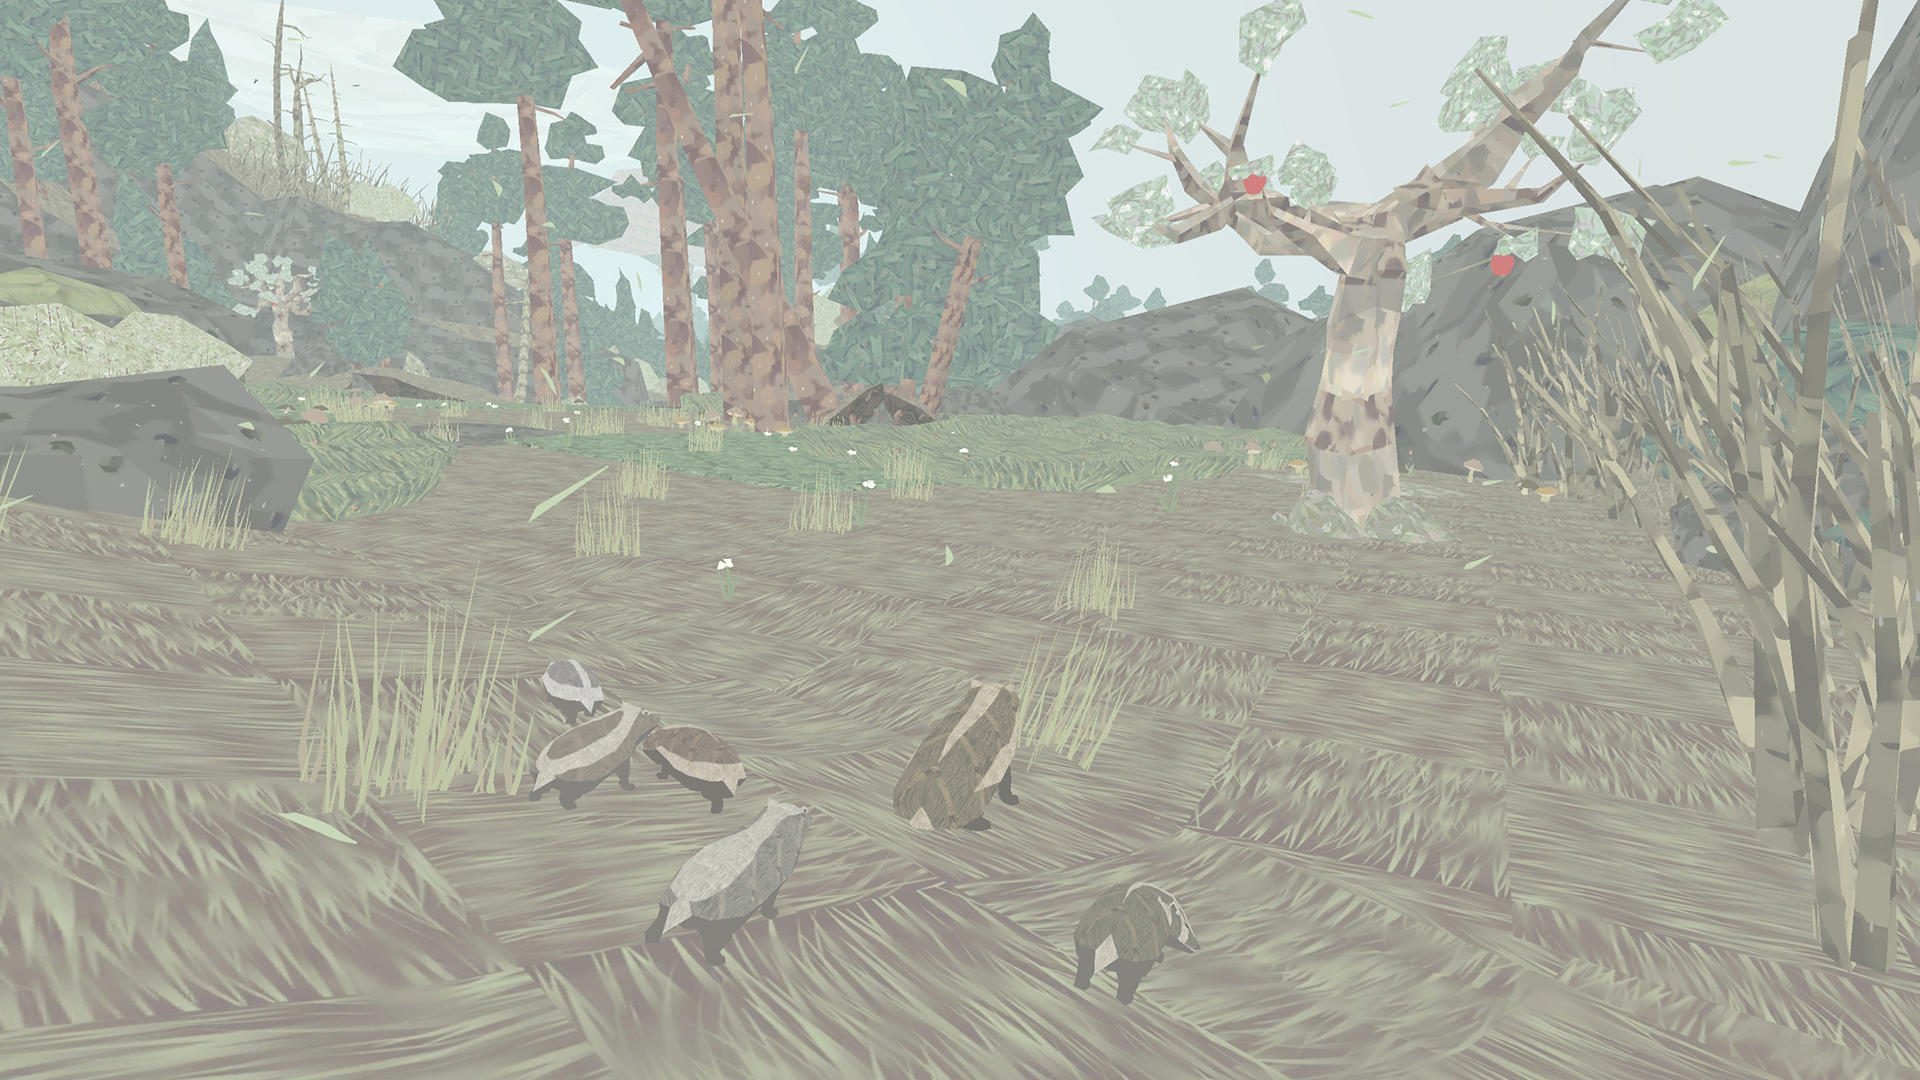 Screenshot 1 of Nơi trú ẩn: Cuộc phiêu lưu của động vật 1.0.9